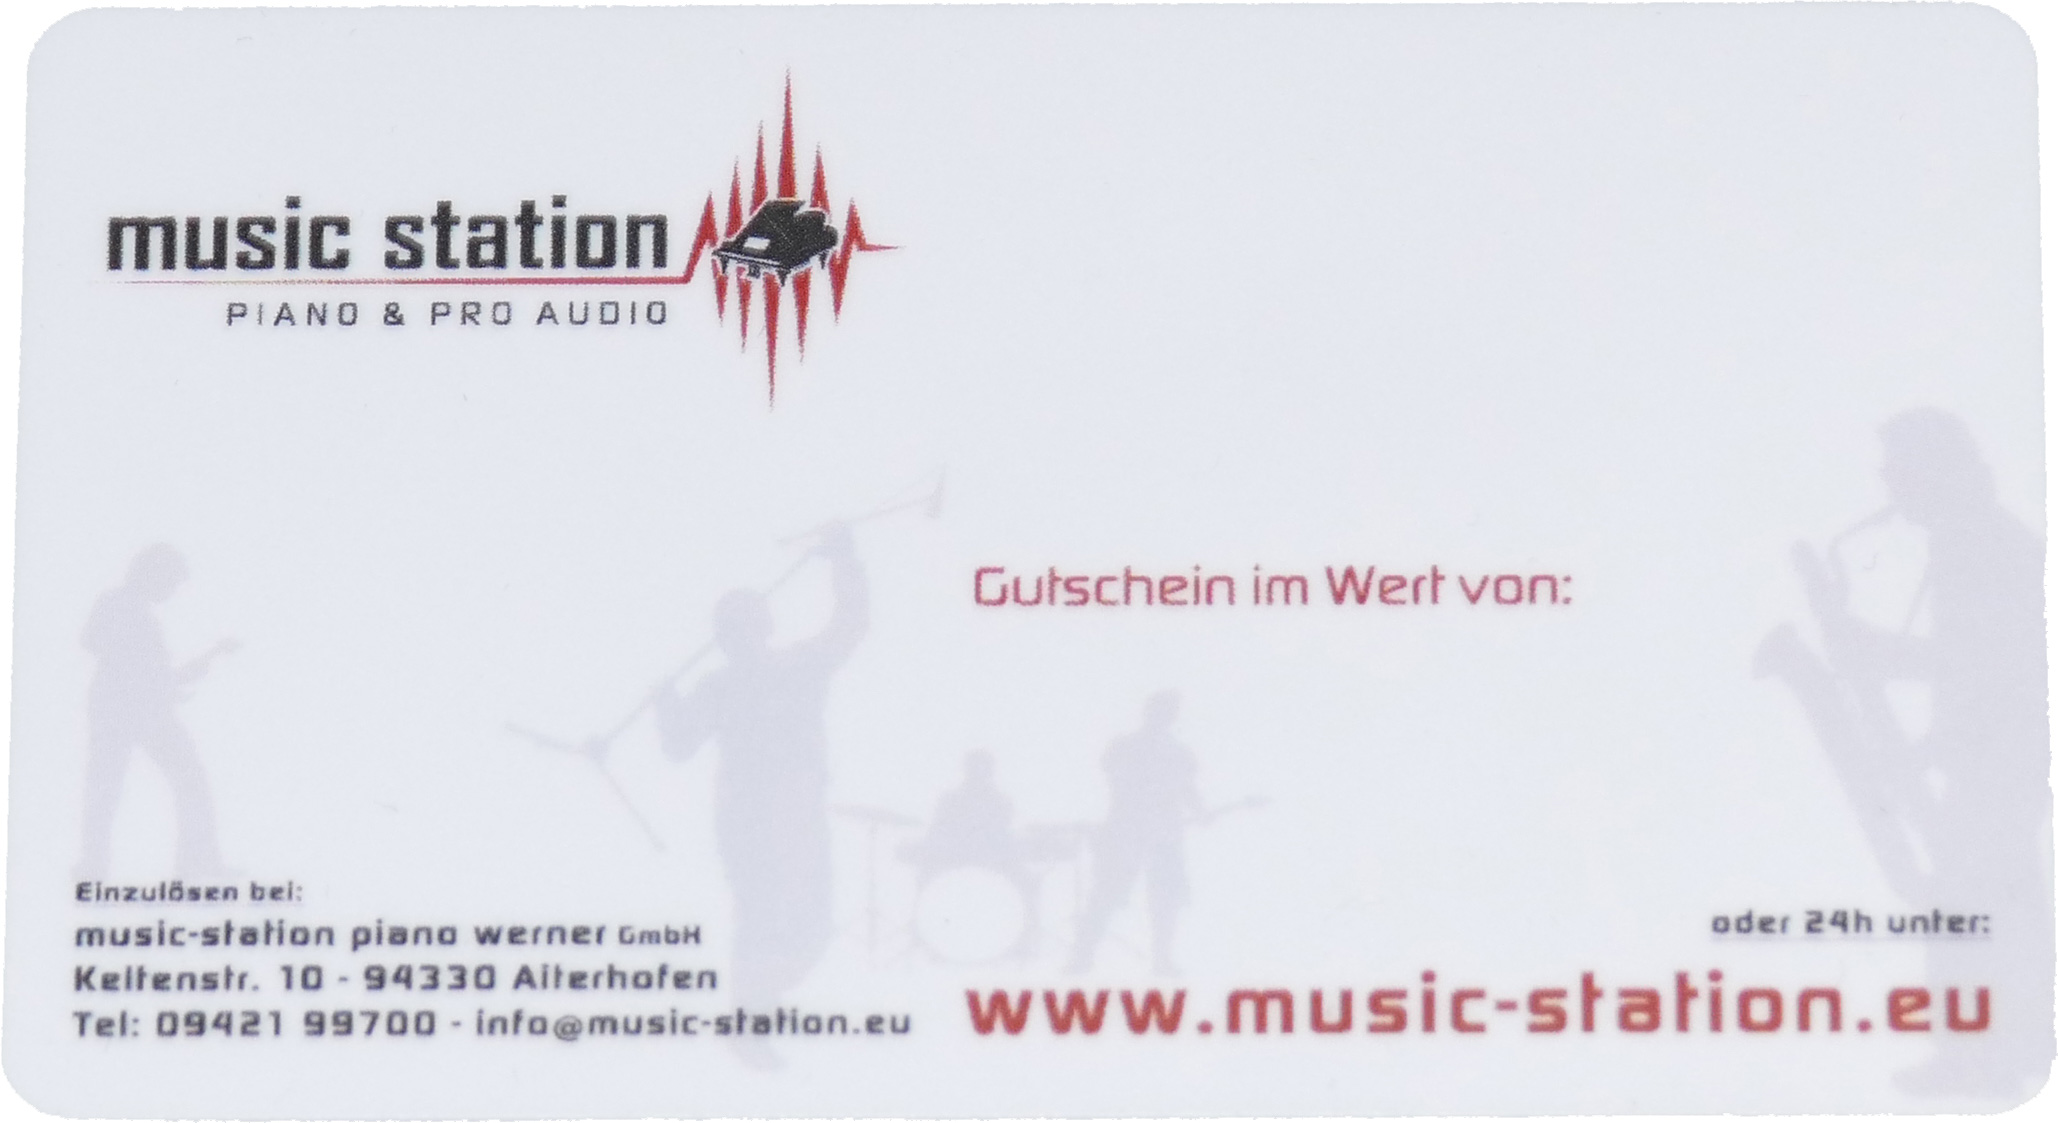 Music Station Gutschein 25 Euro